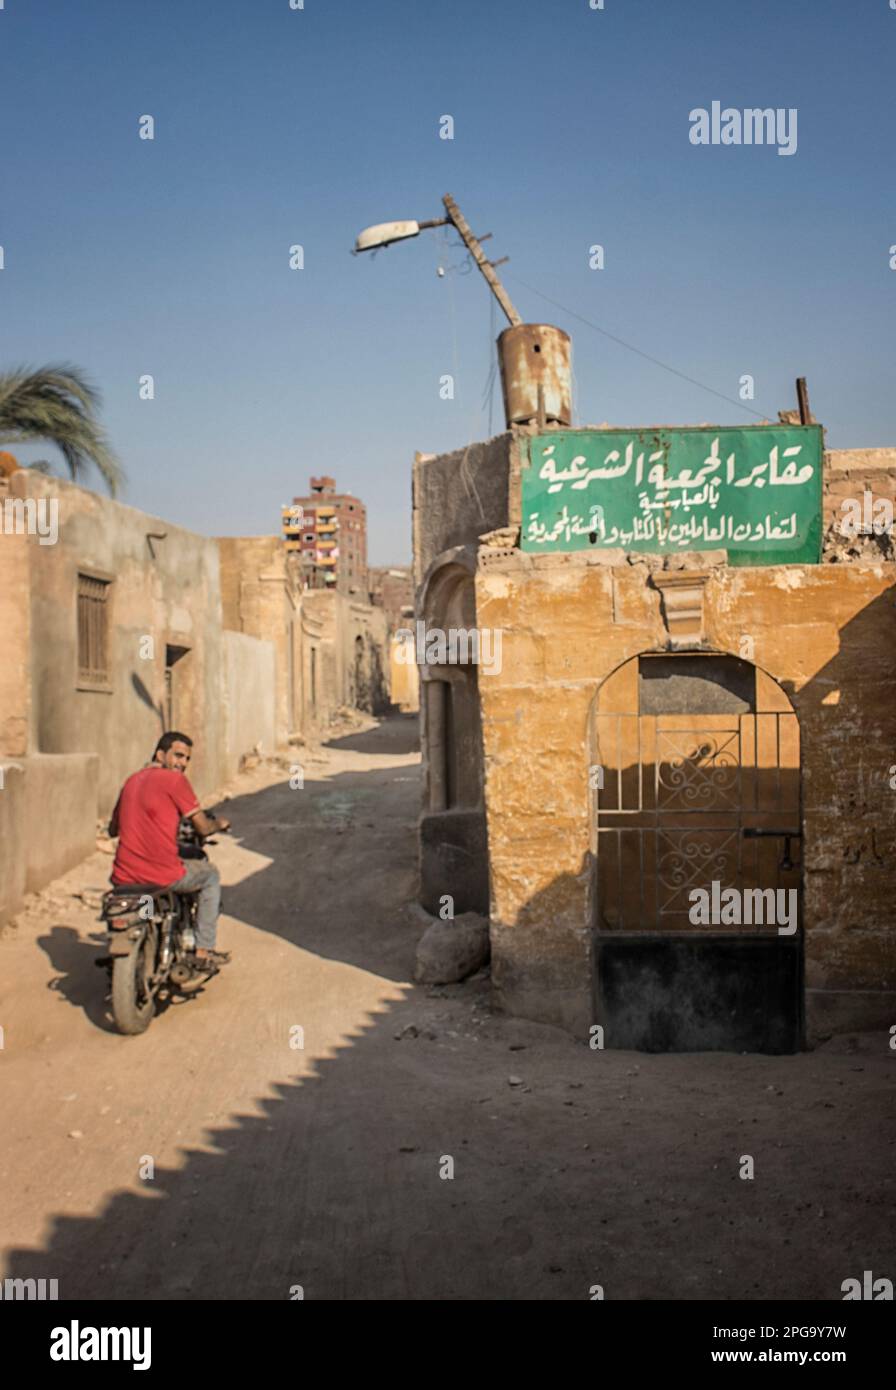 Hombre en una motocicleta que sale de la ciudad de los muertos. La Ciudad de los Muertos, o Necrópolis de El Cairo, también conocida como el Qarafa es una serie de vastas necrópolis y cementerios de la era islámica en El Cairo, Egipto. Foto de stock